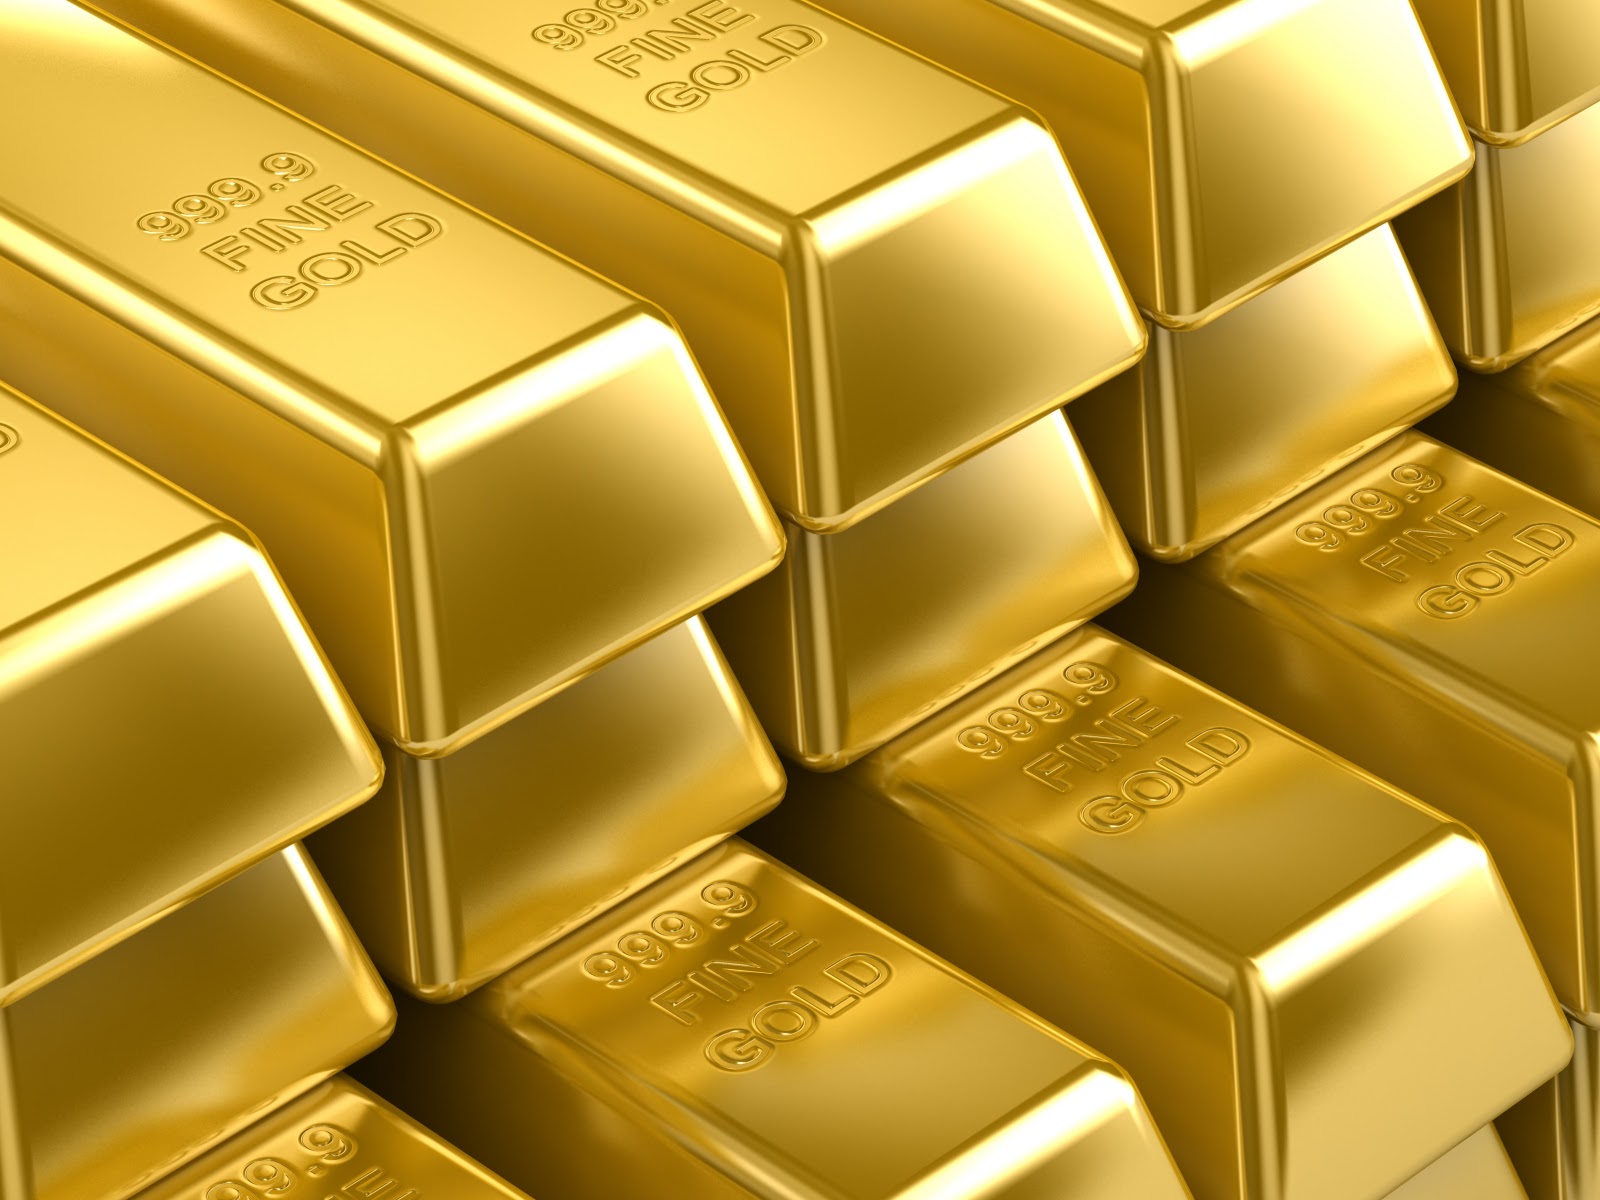 ارتفاع الذهب إلى أعلى مستوى في أسبوعين